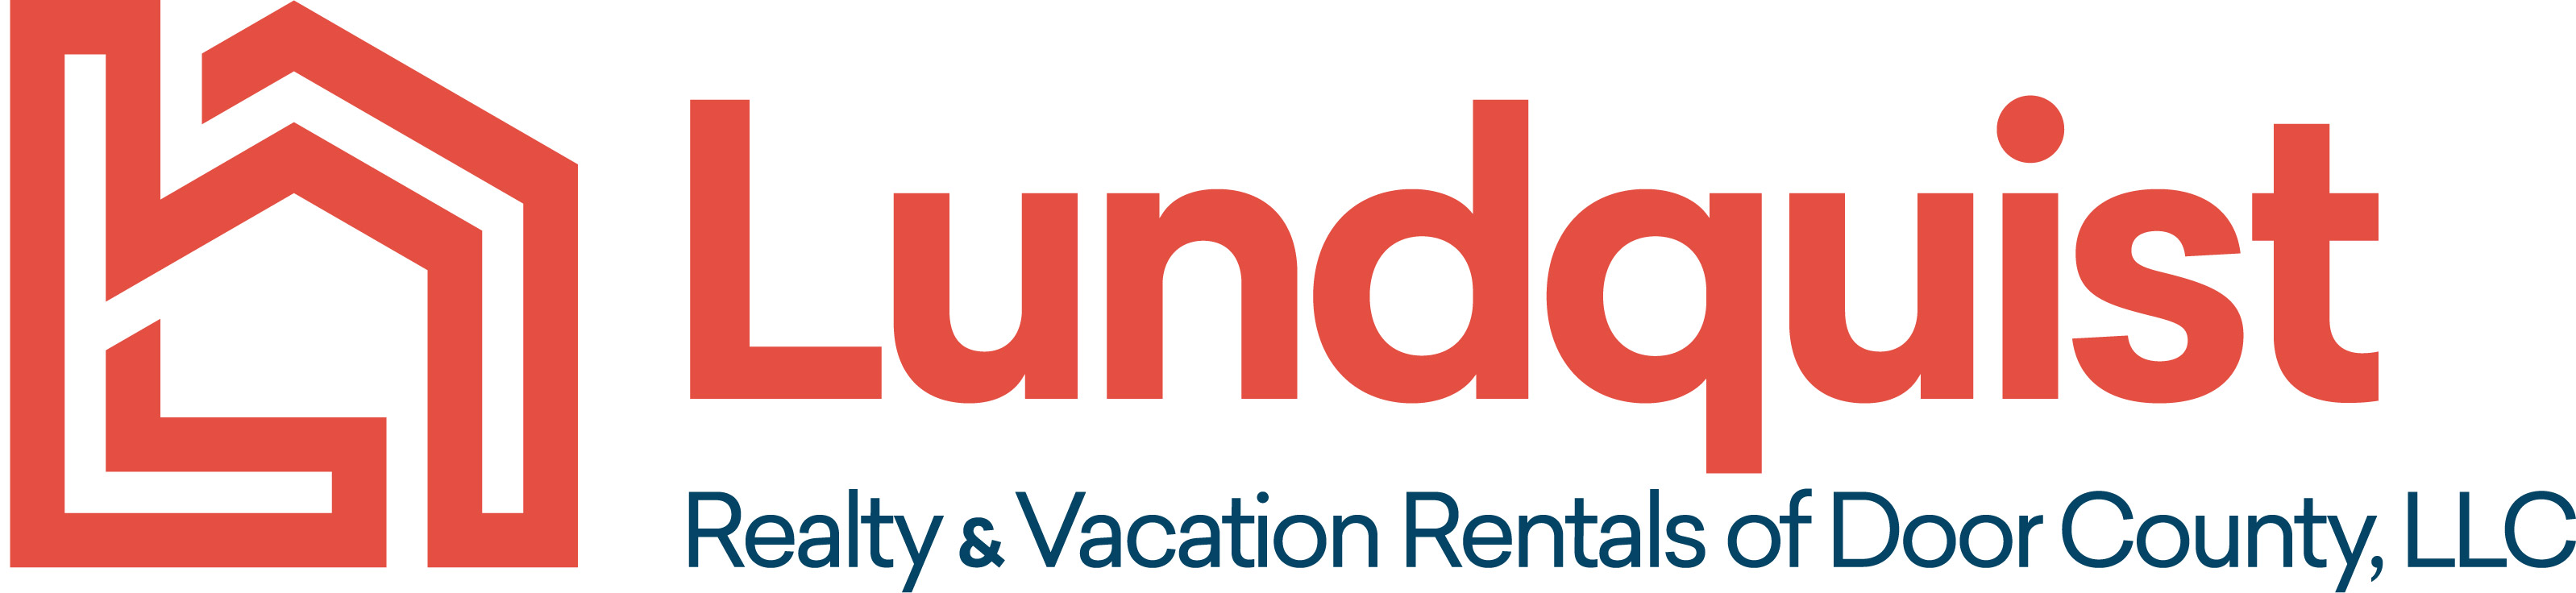 Lundquist Realty & Vacation Rentals of Door County